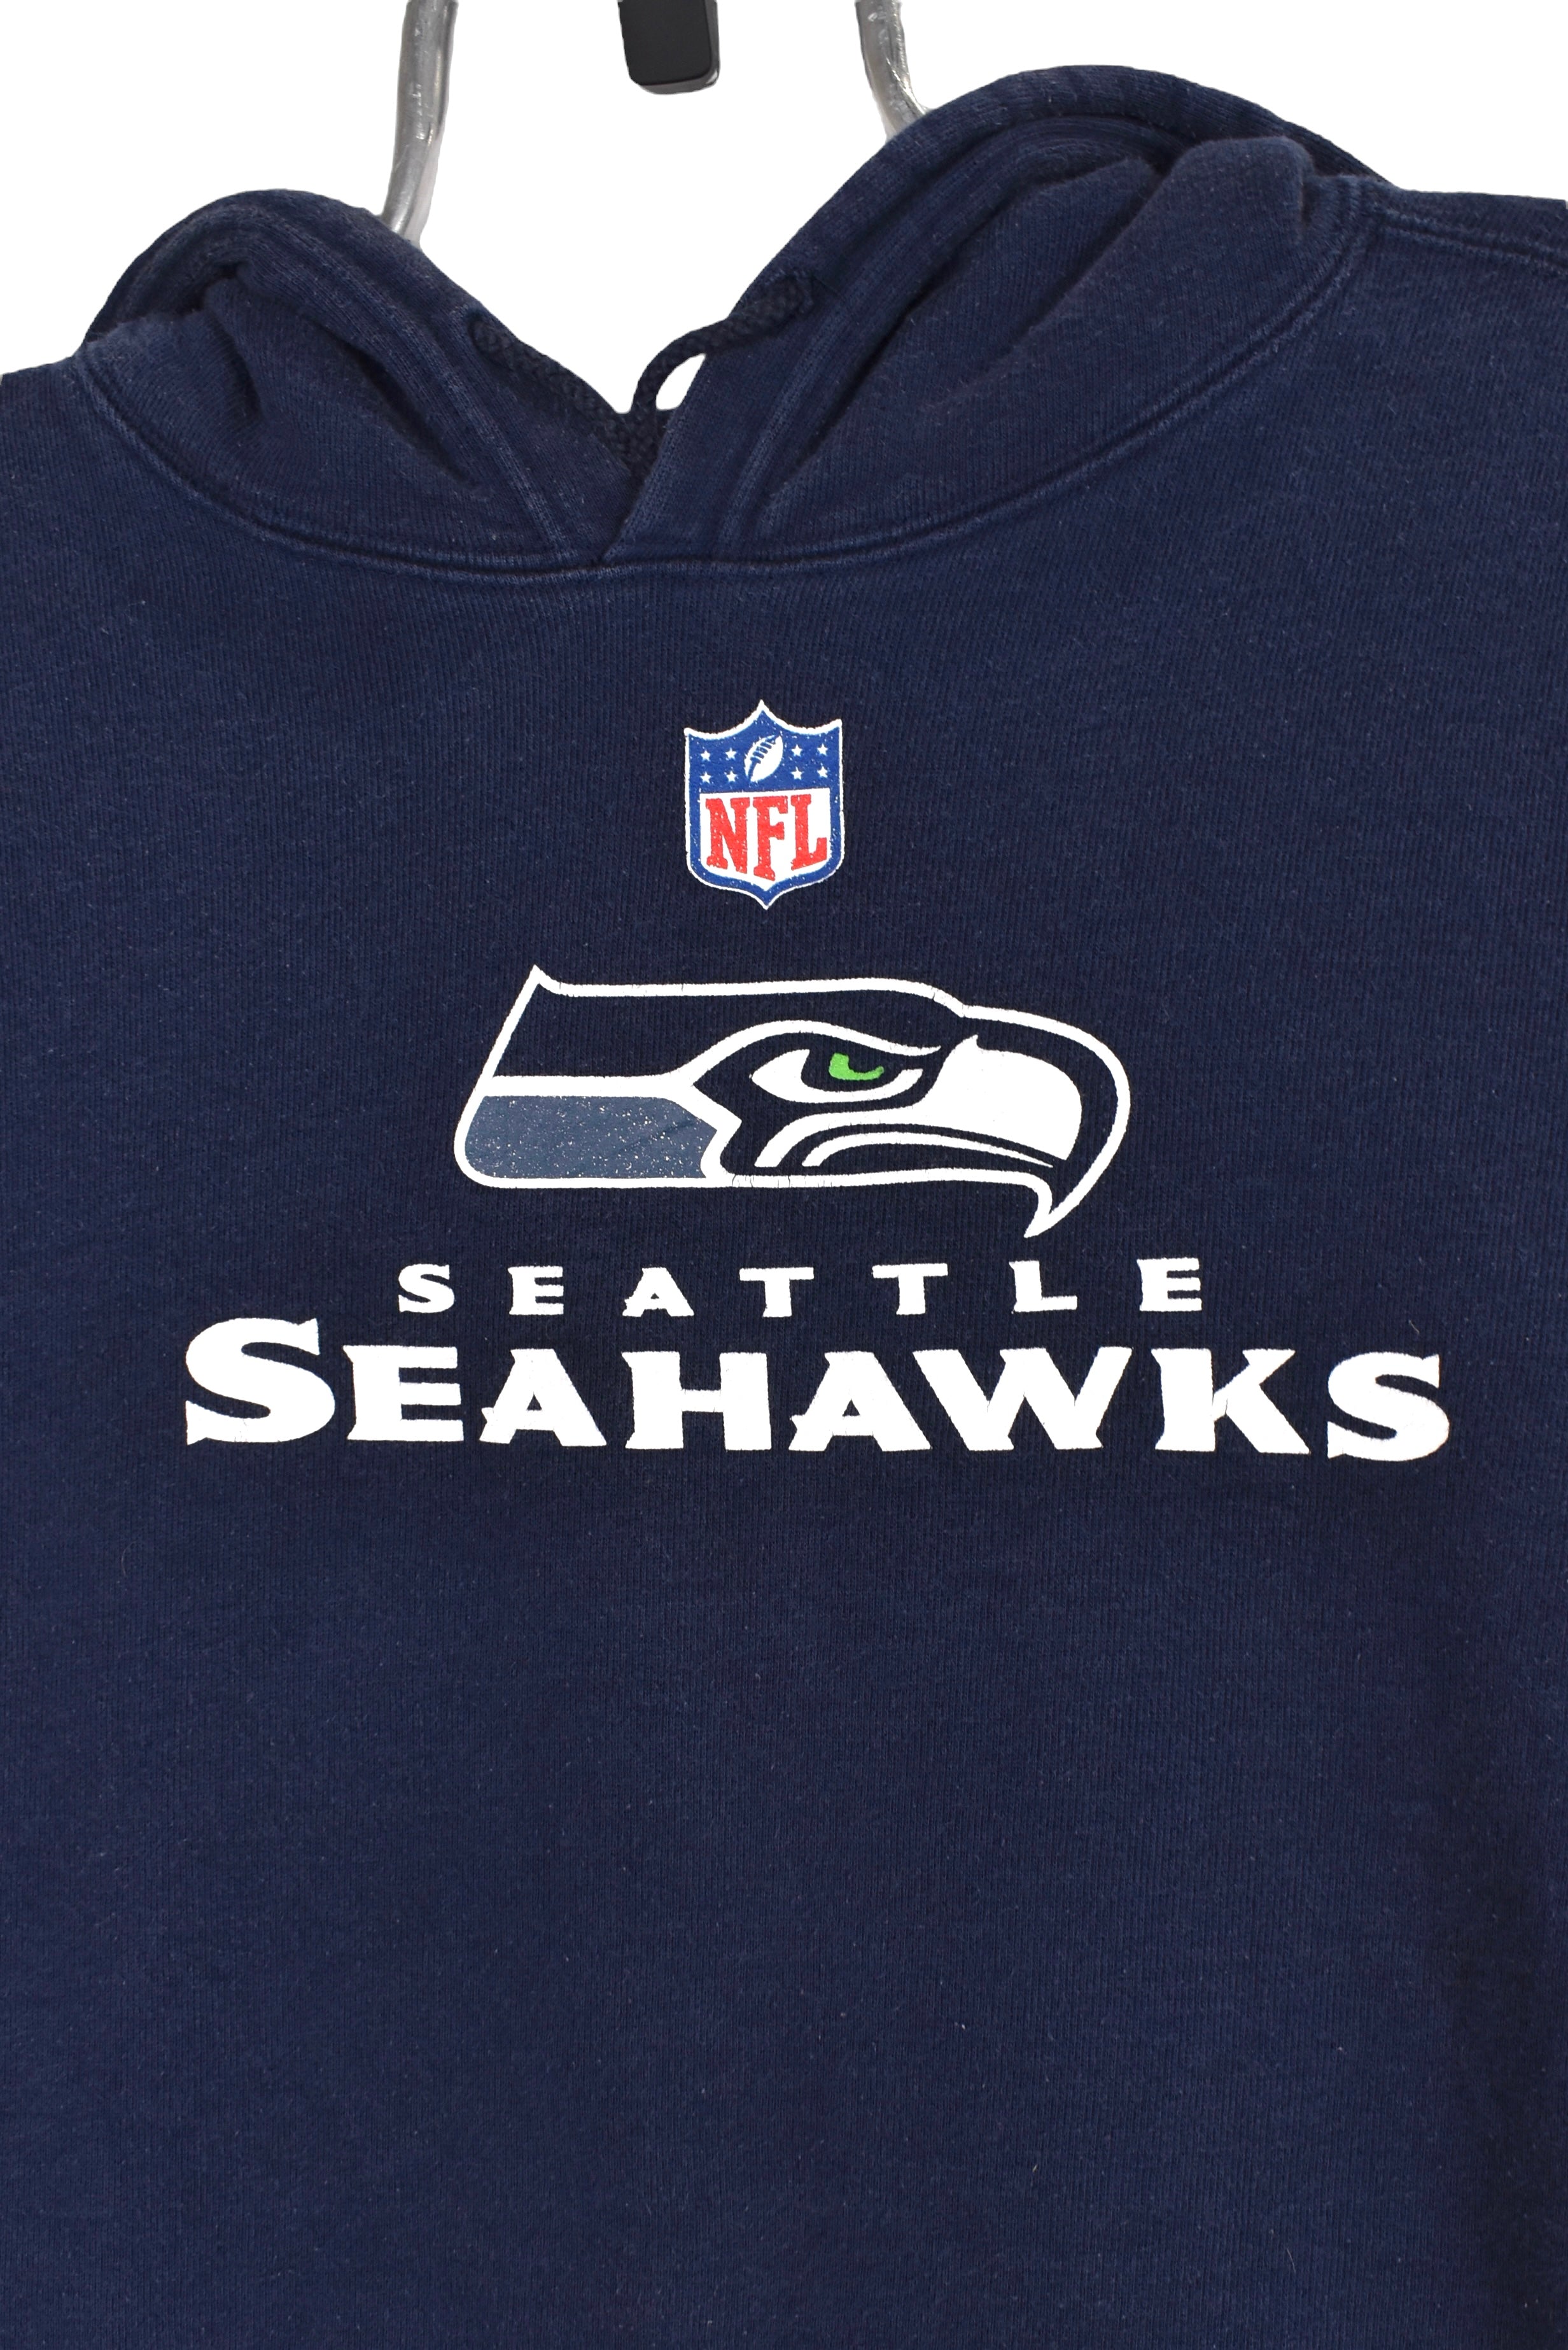 Vintage Seattle Seahawks hoodie (XL), navy NFL graphic sweatshirt